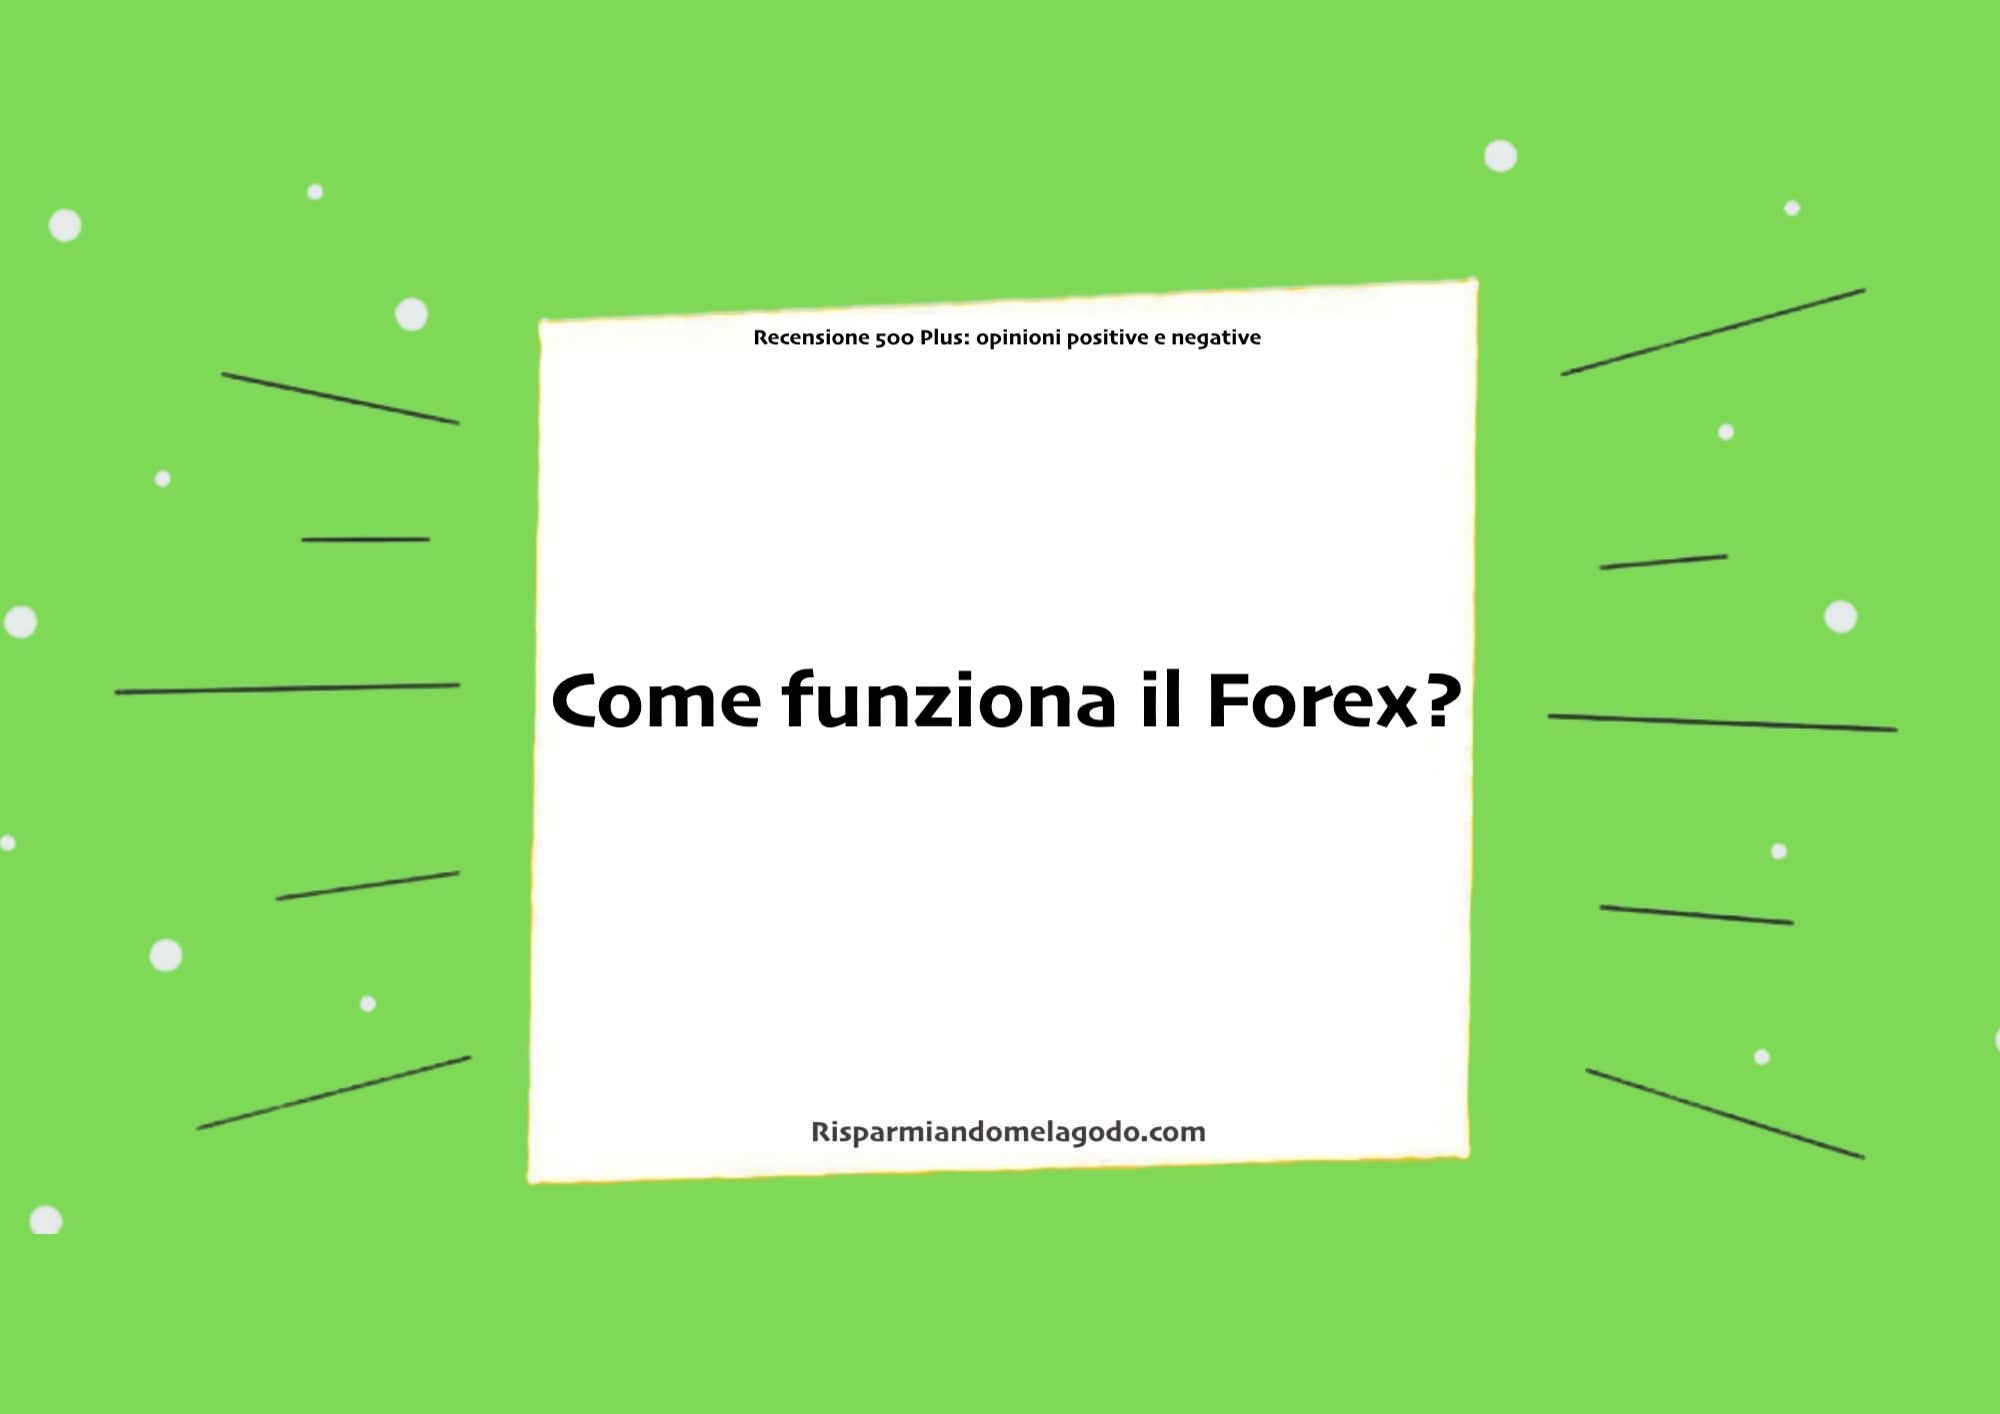 Come funziona il Forex?